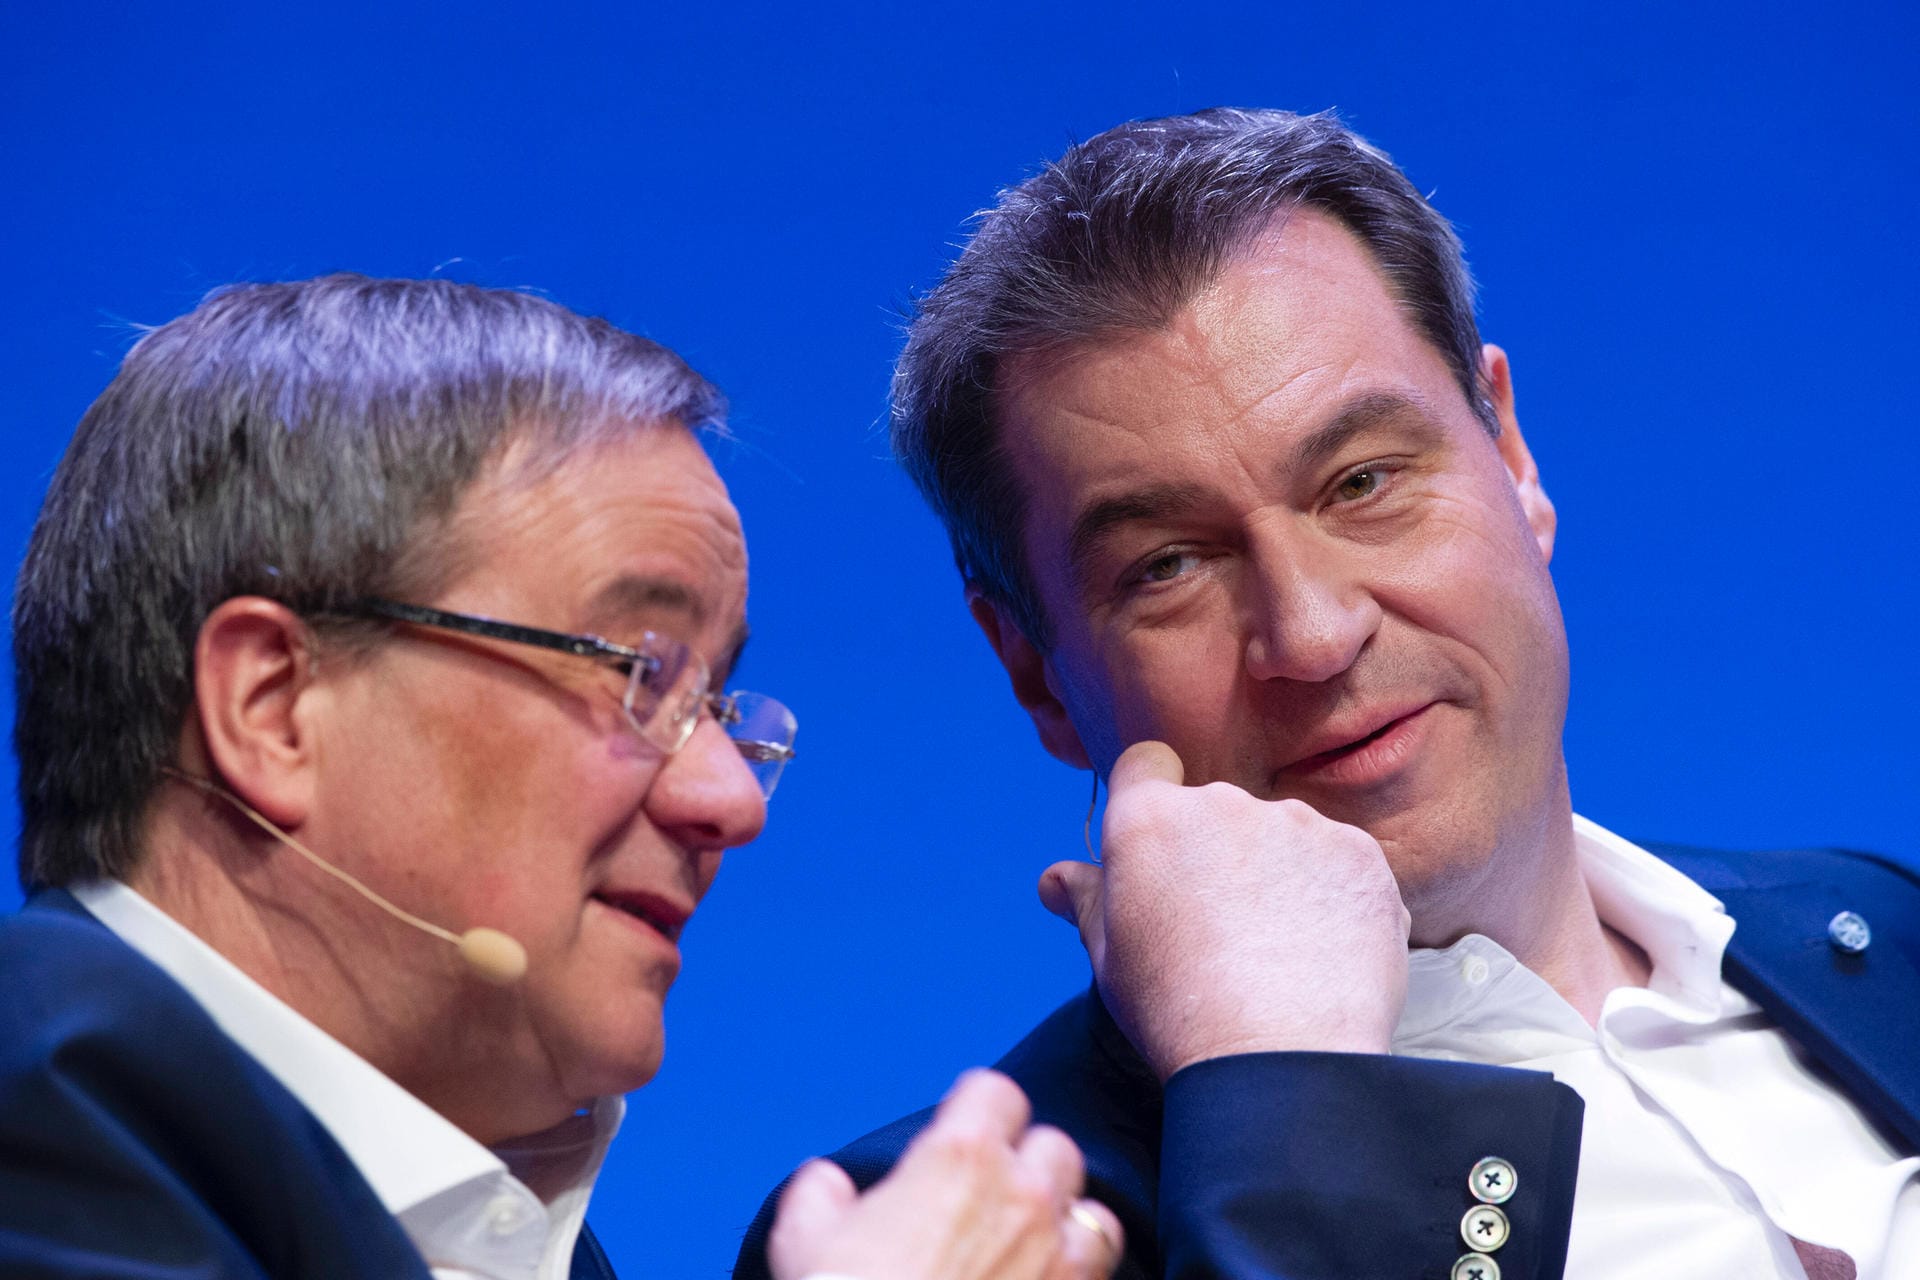 Im April 2021 – fünf Monate vor der Bundestagswahl – nimmt Laschet die nächste Hürde: In einem internen Machtkampf um die Kanzlerkandidatur setzt er sich gegen CSU-Chef Markus Söder durch. Viele in der Parteibasis sind mit dieser Entscheidung des CDU-Präsidiums unzufrieden.